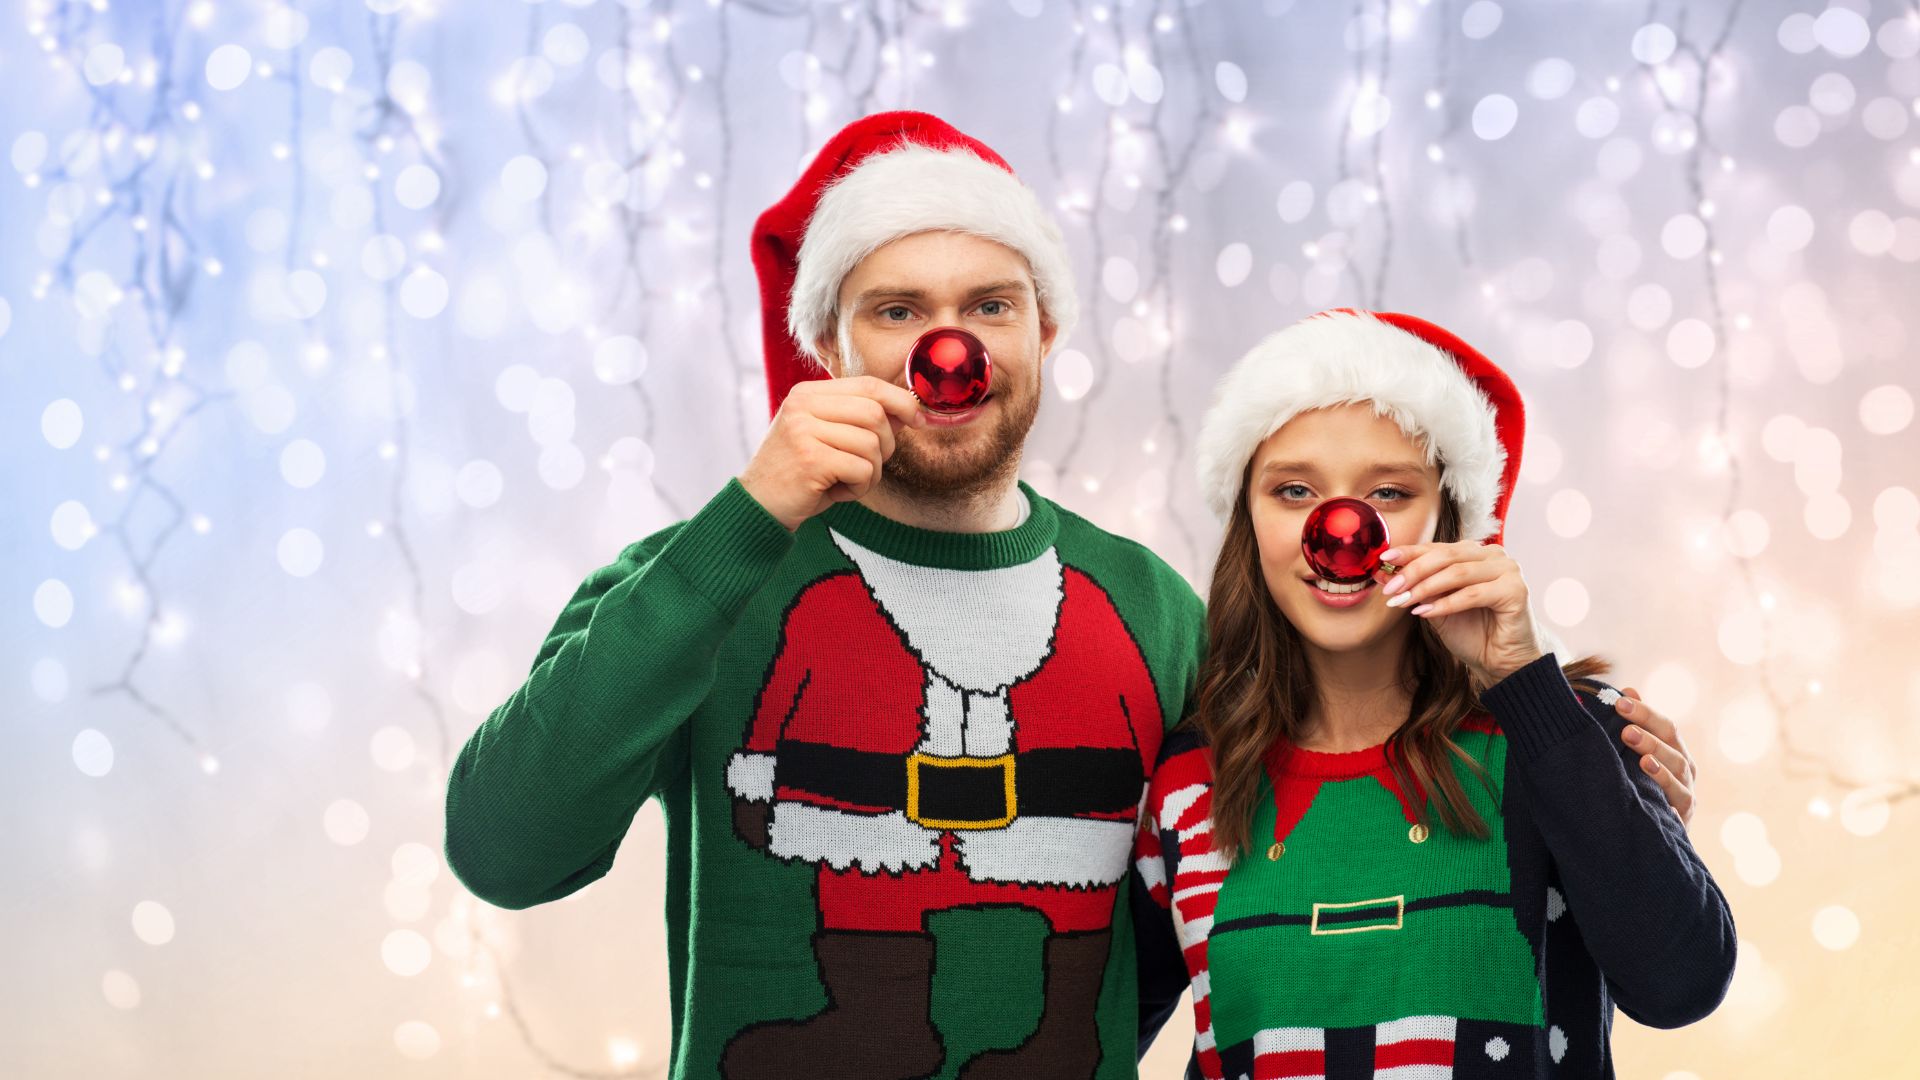 Imagem de fundo prateado. Em destaque, um casal usa um boné de Natal e um suéter verde de manga longa, com a foto do papai noel estampada.